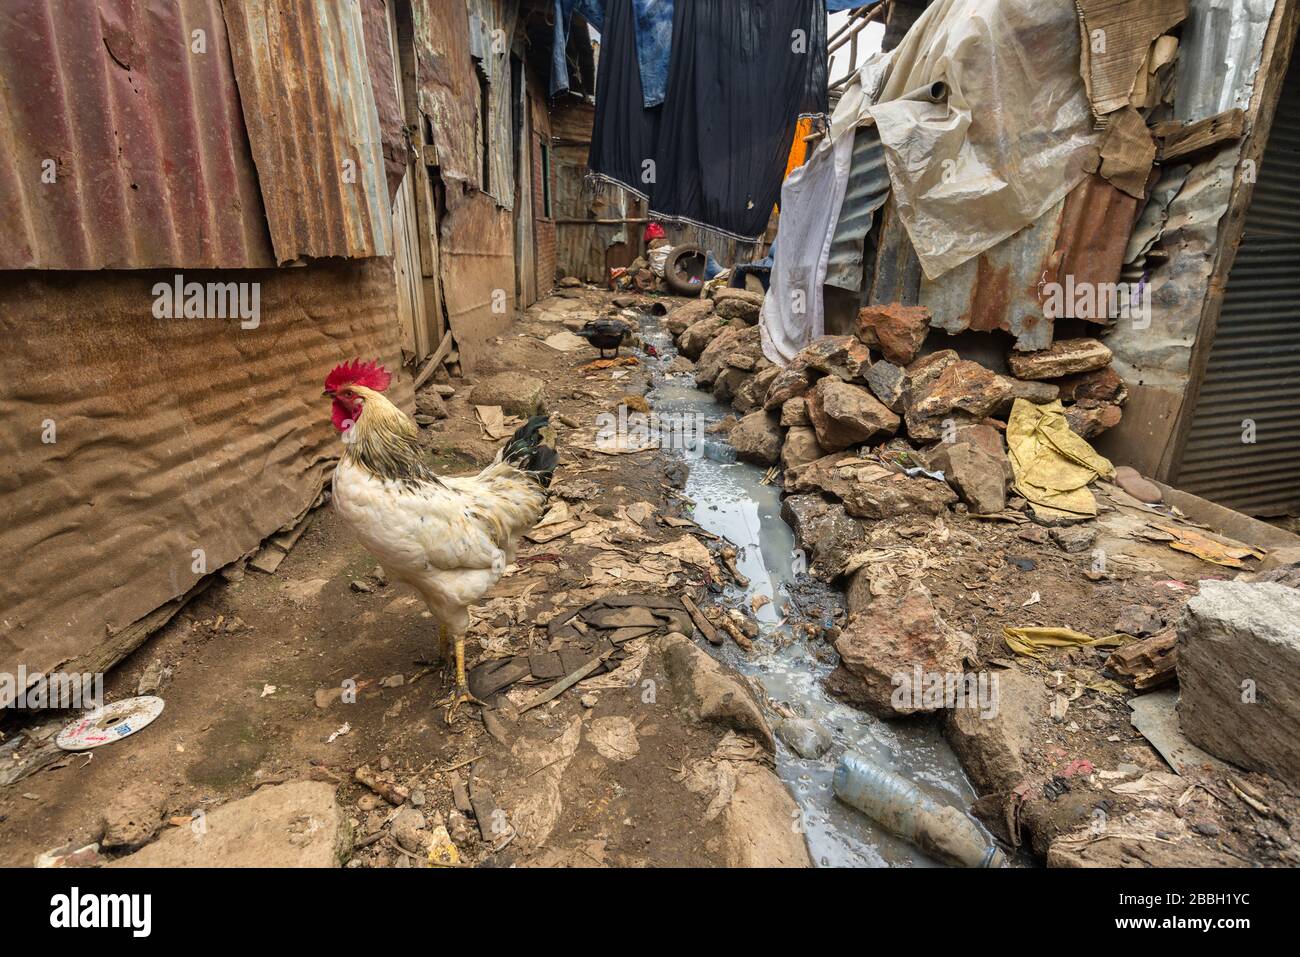 Chickens walking around an open sewer running through slum shacks, Nairobi, Kenya Stock Photo